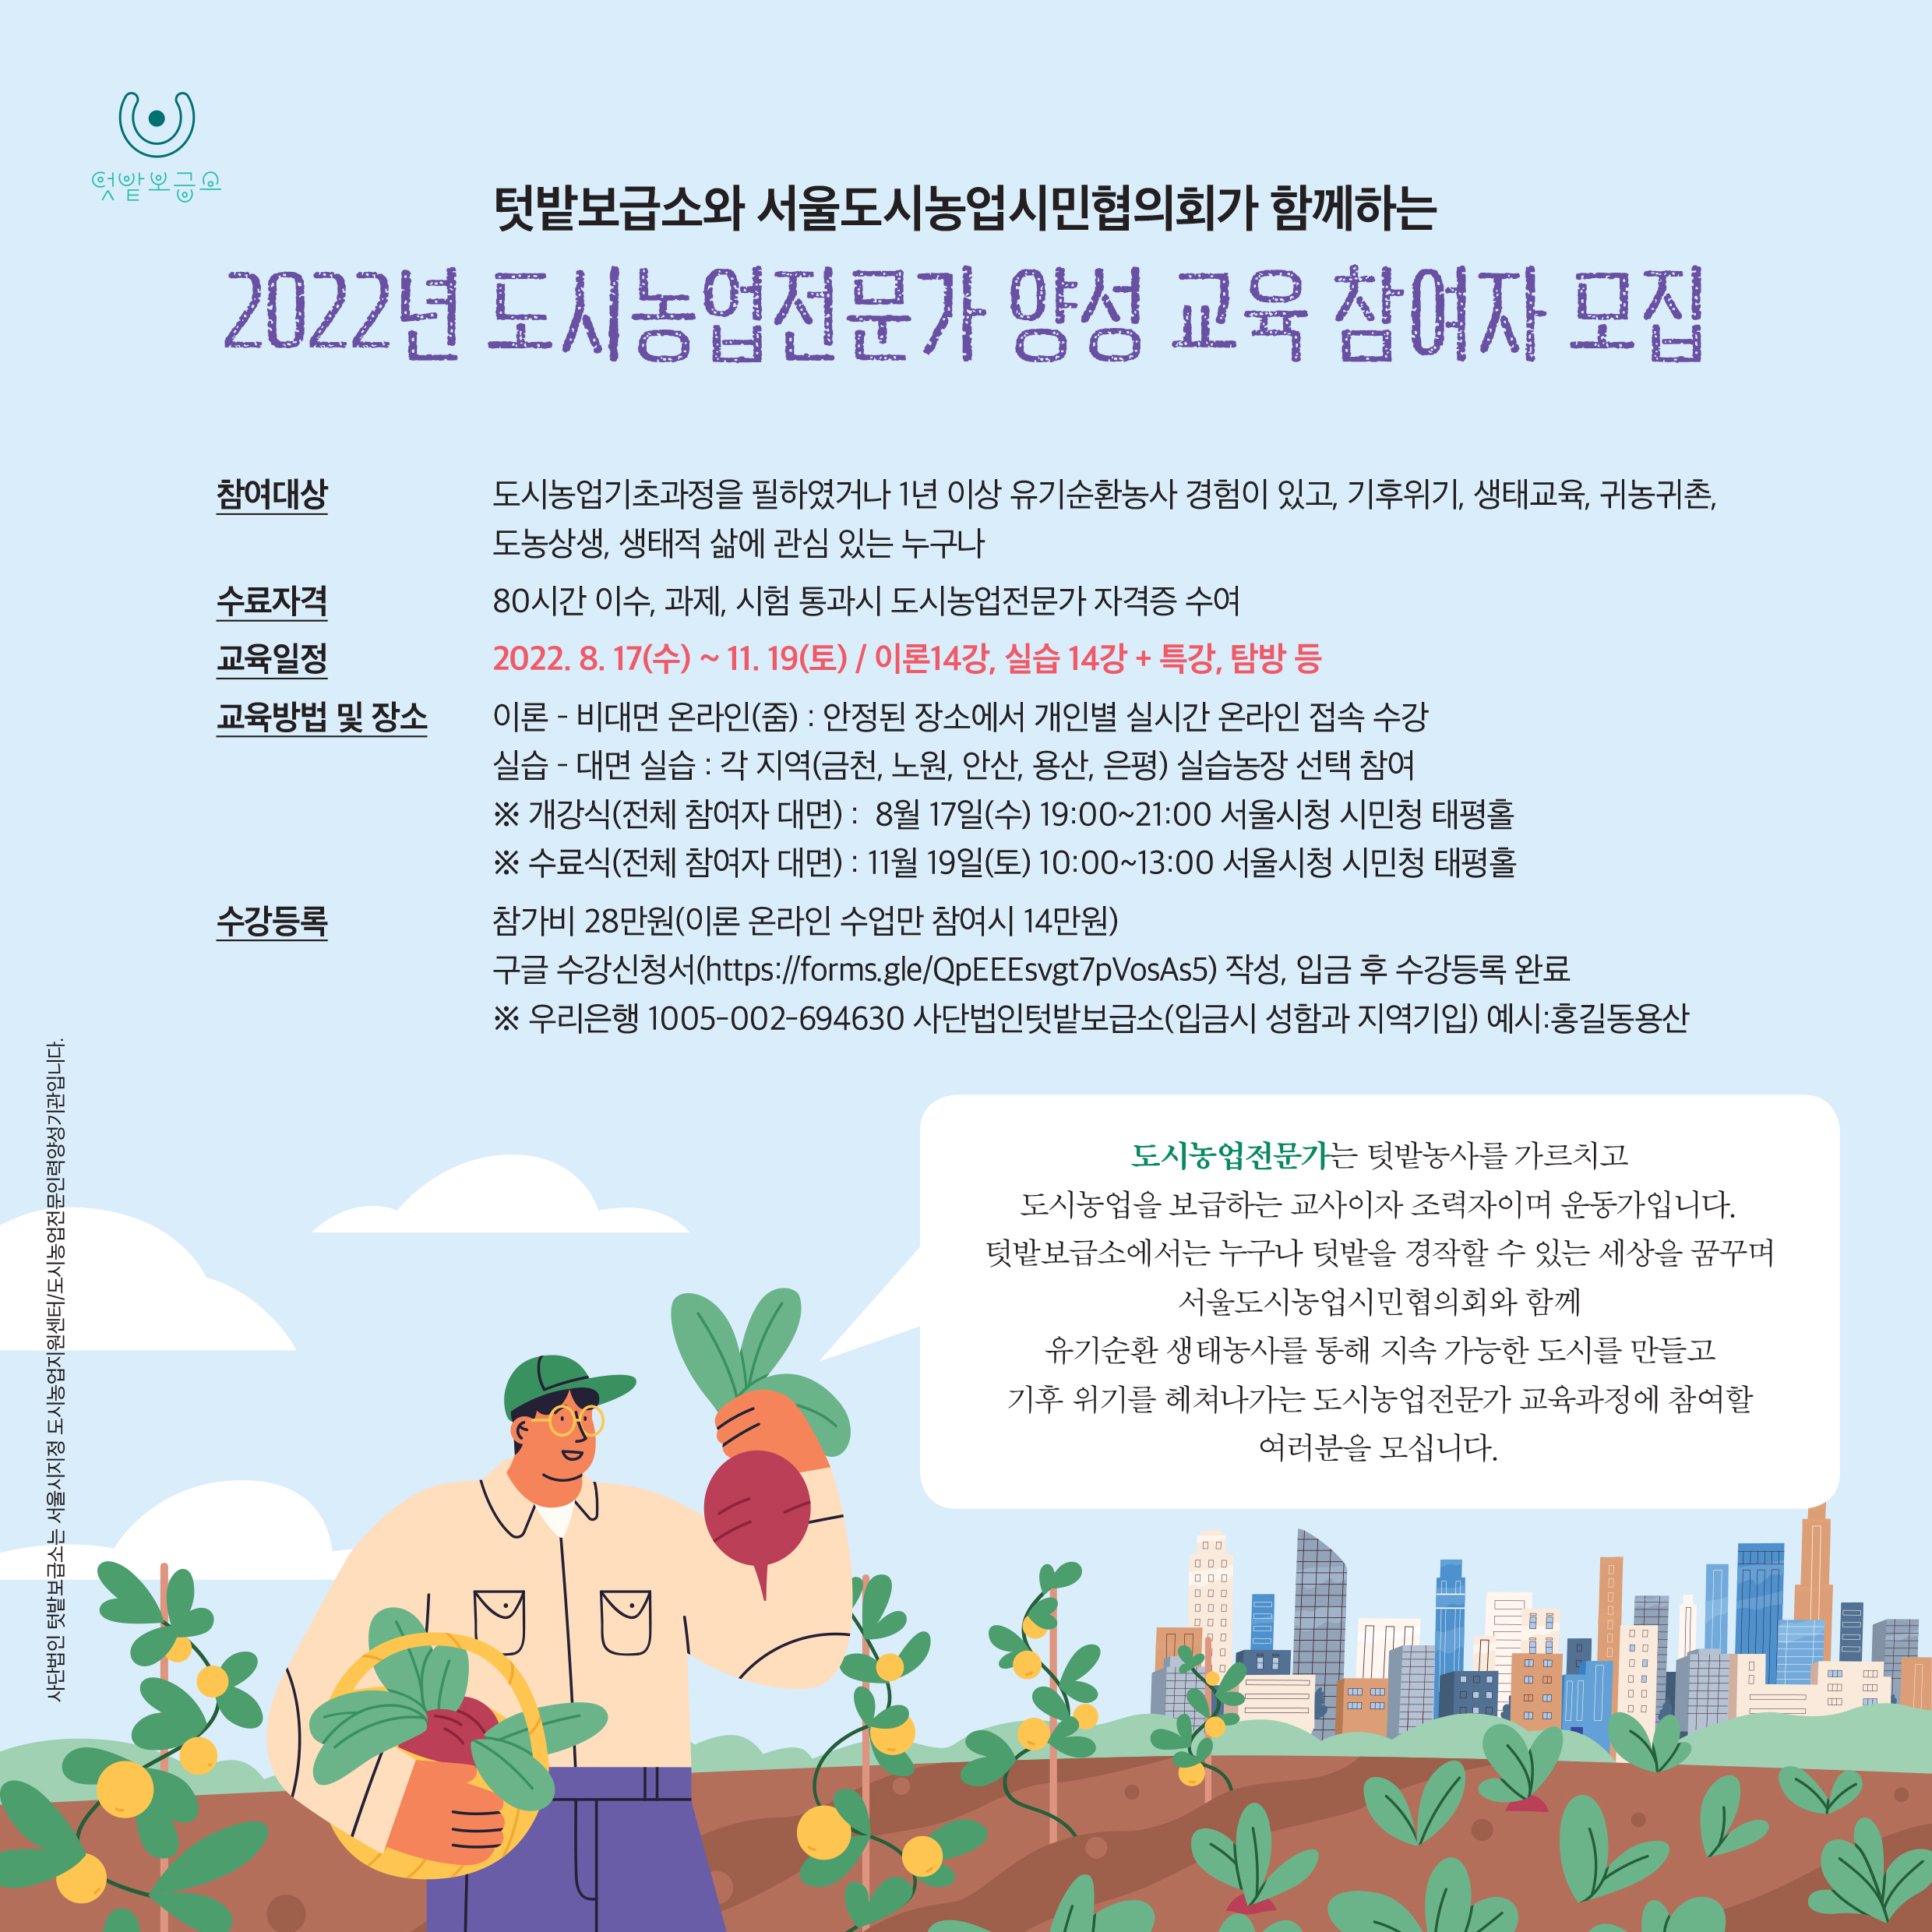 2022 도시농업전문가 양성교육 (이론_비대면/실습_5개 실습텃밭 선택참여 가능)